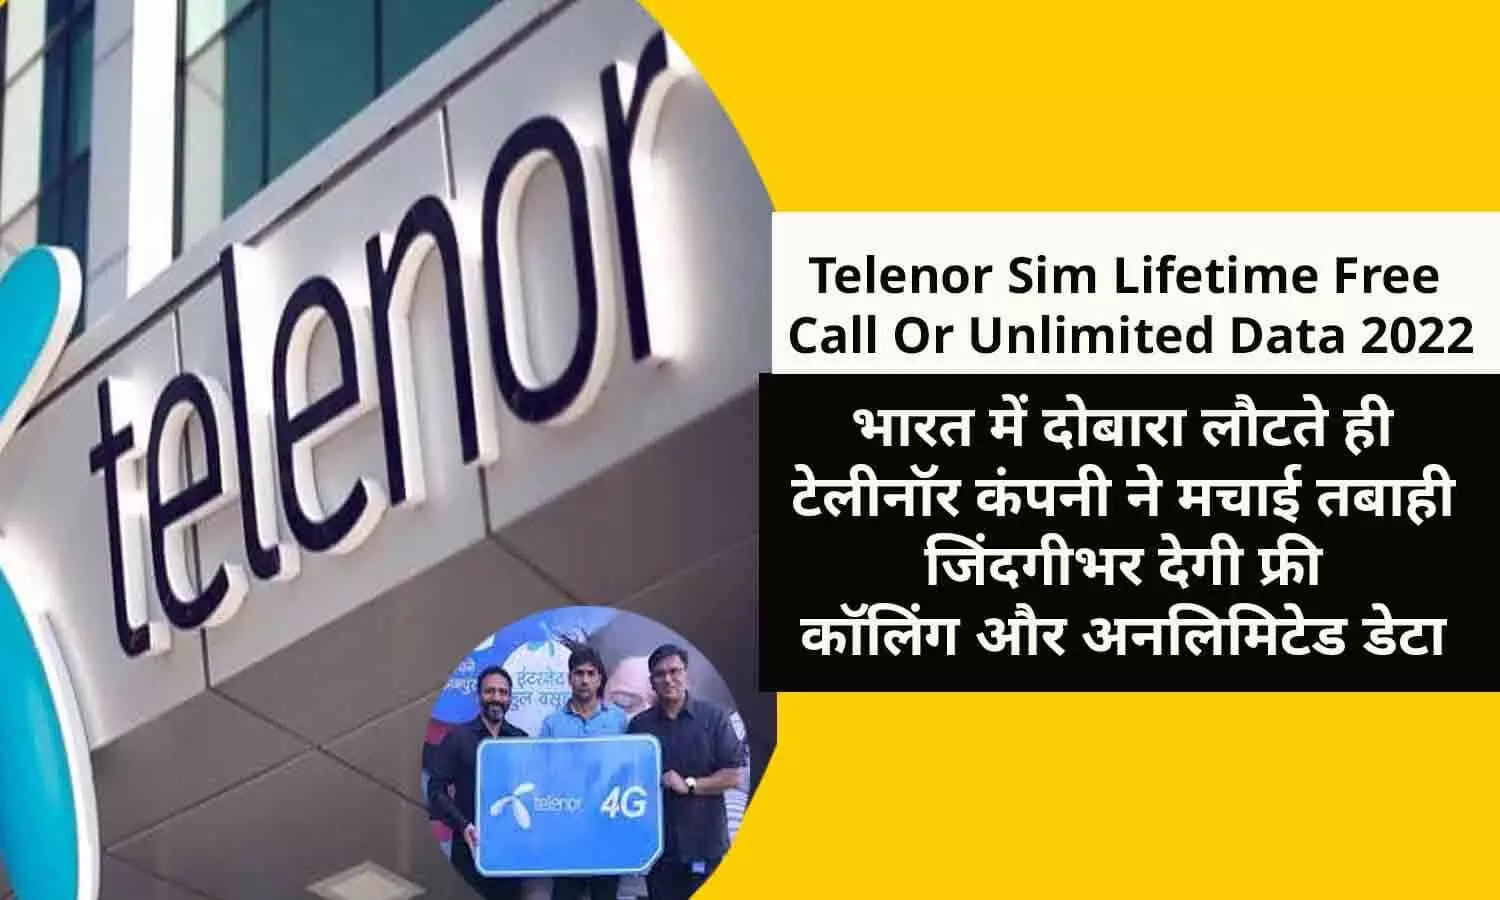 Telenor Sim In Hindi 2022: टेलीनॉर कंपनी फिर लौटी वापस, जिंदगीभर फ्री कॉलिंग और अनलिमिटेड डेटा देने का ऐलान, बिन देर किए फटाफट जाने नए प्लान के बारे में..